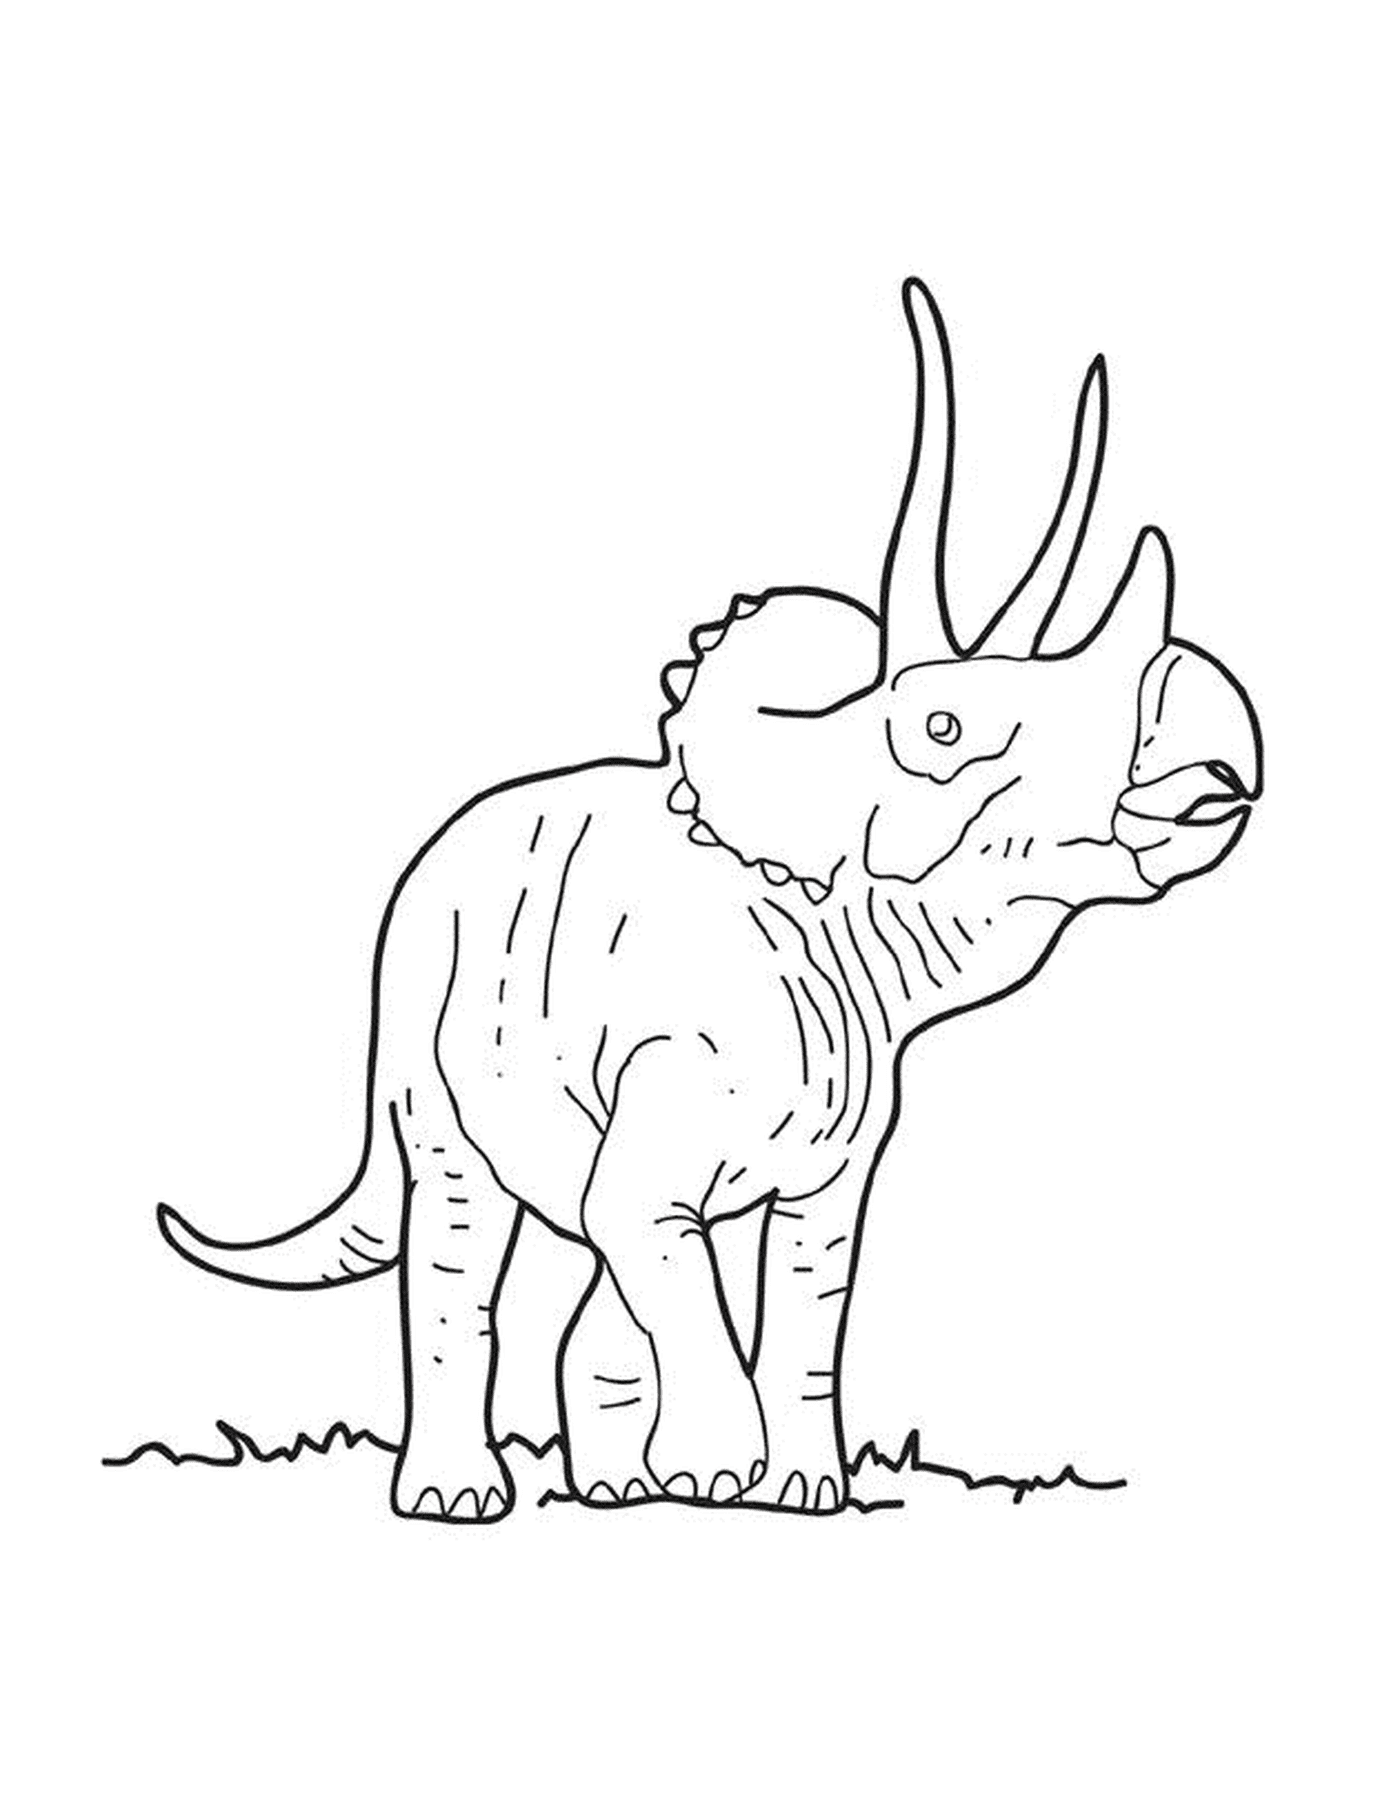  Un triceratops adulto en la hierba 